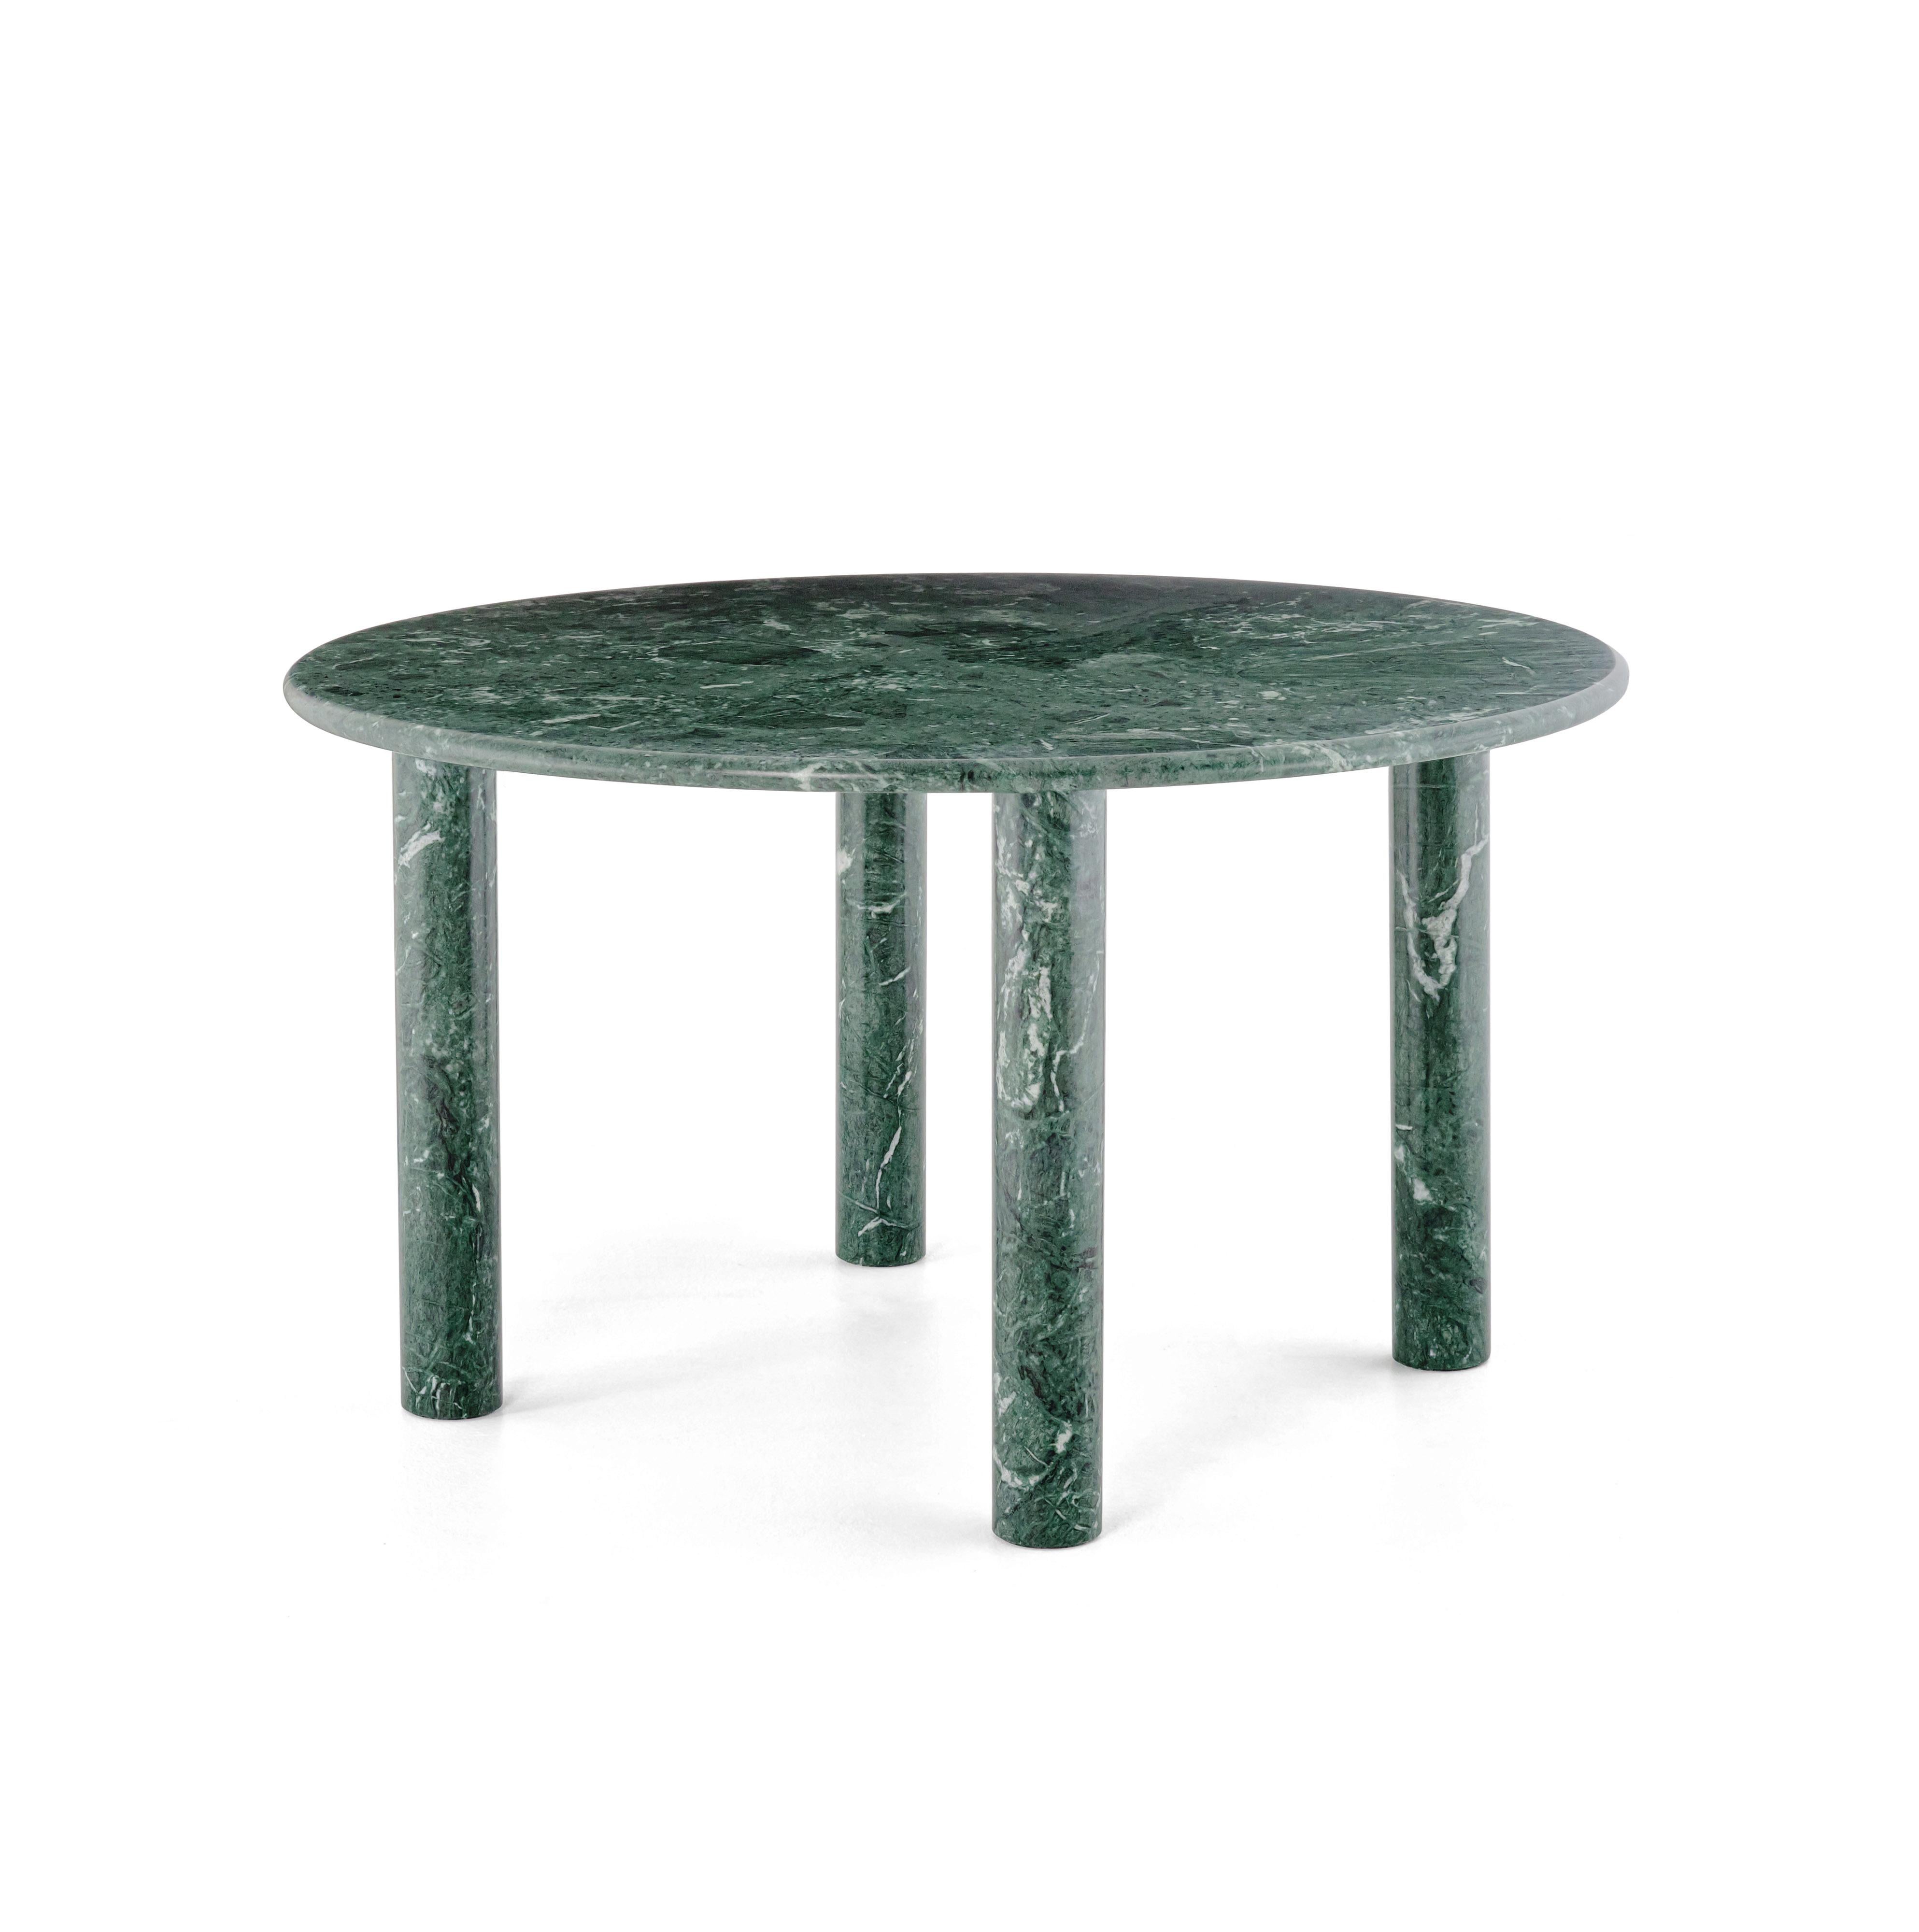 Runder esszimmertisch 'PAUL' von NOOM
Designer: Kateryna Sokolova


Modell auf der Abbildung: Grüner Marmor - verde ocean
Abmessungen: H 71 cm, Ø 130 cm

Das Design des Tisches ist eine 